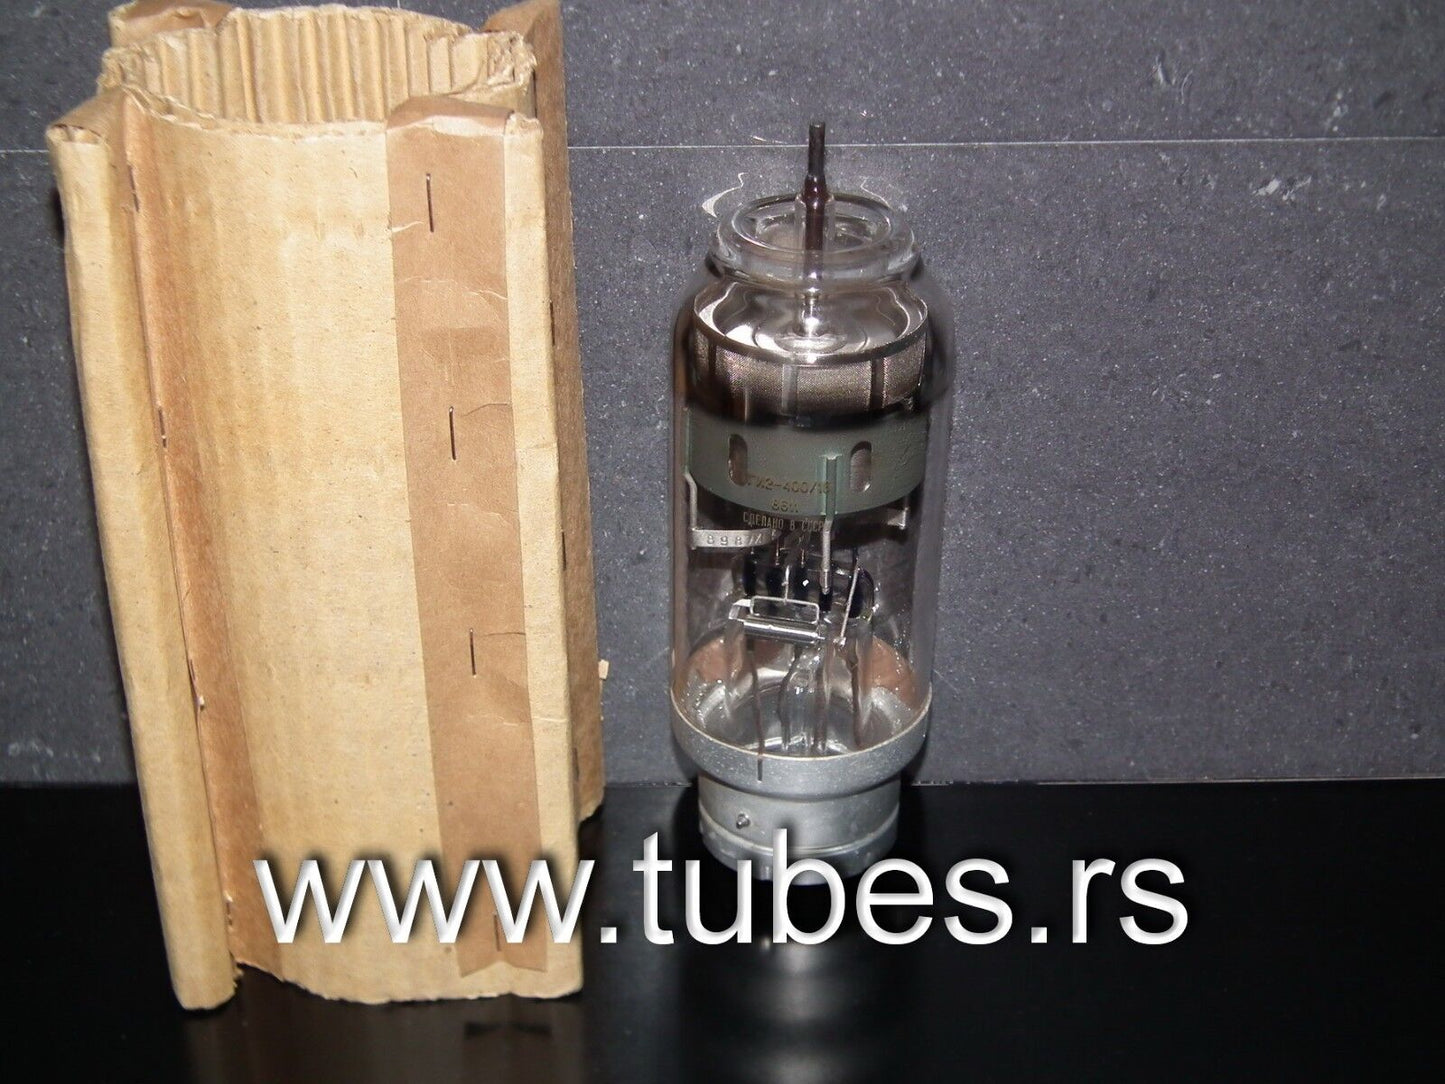 TGI2-400/16 NOS HIGH POWER HYDROGEN THYRATRON VALVE Made in USSR